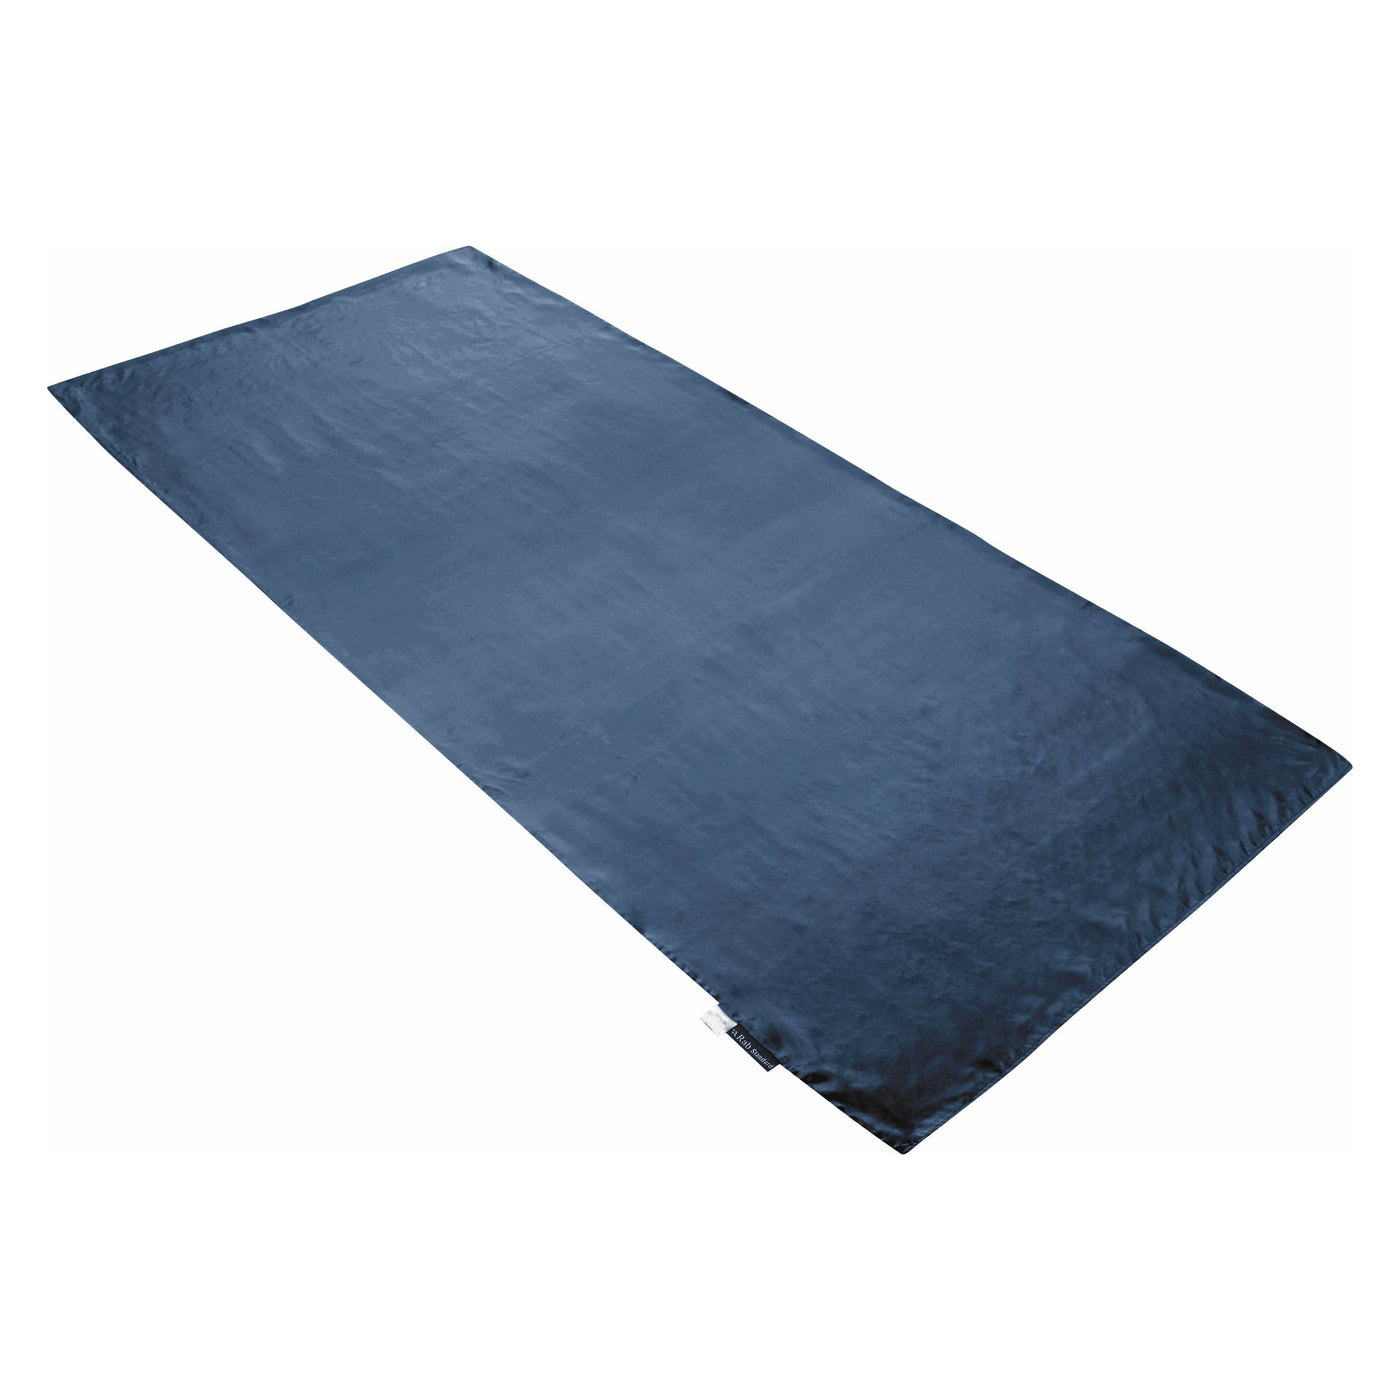 Rab Silk Standard Sleeping Bag Liner